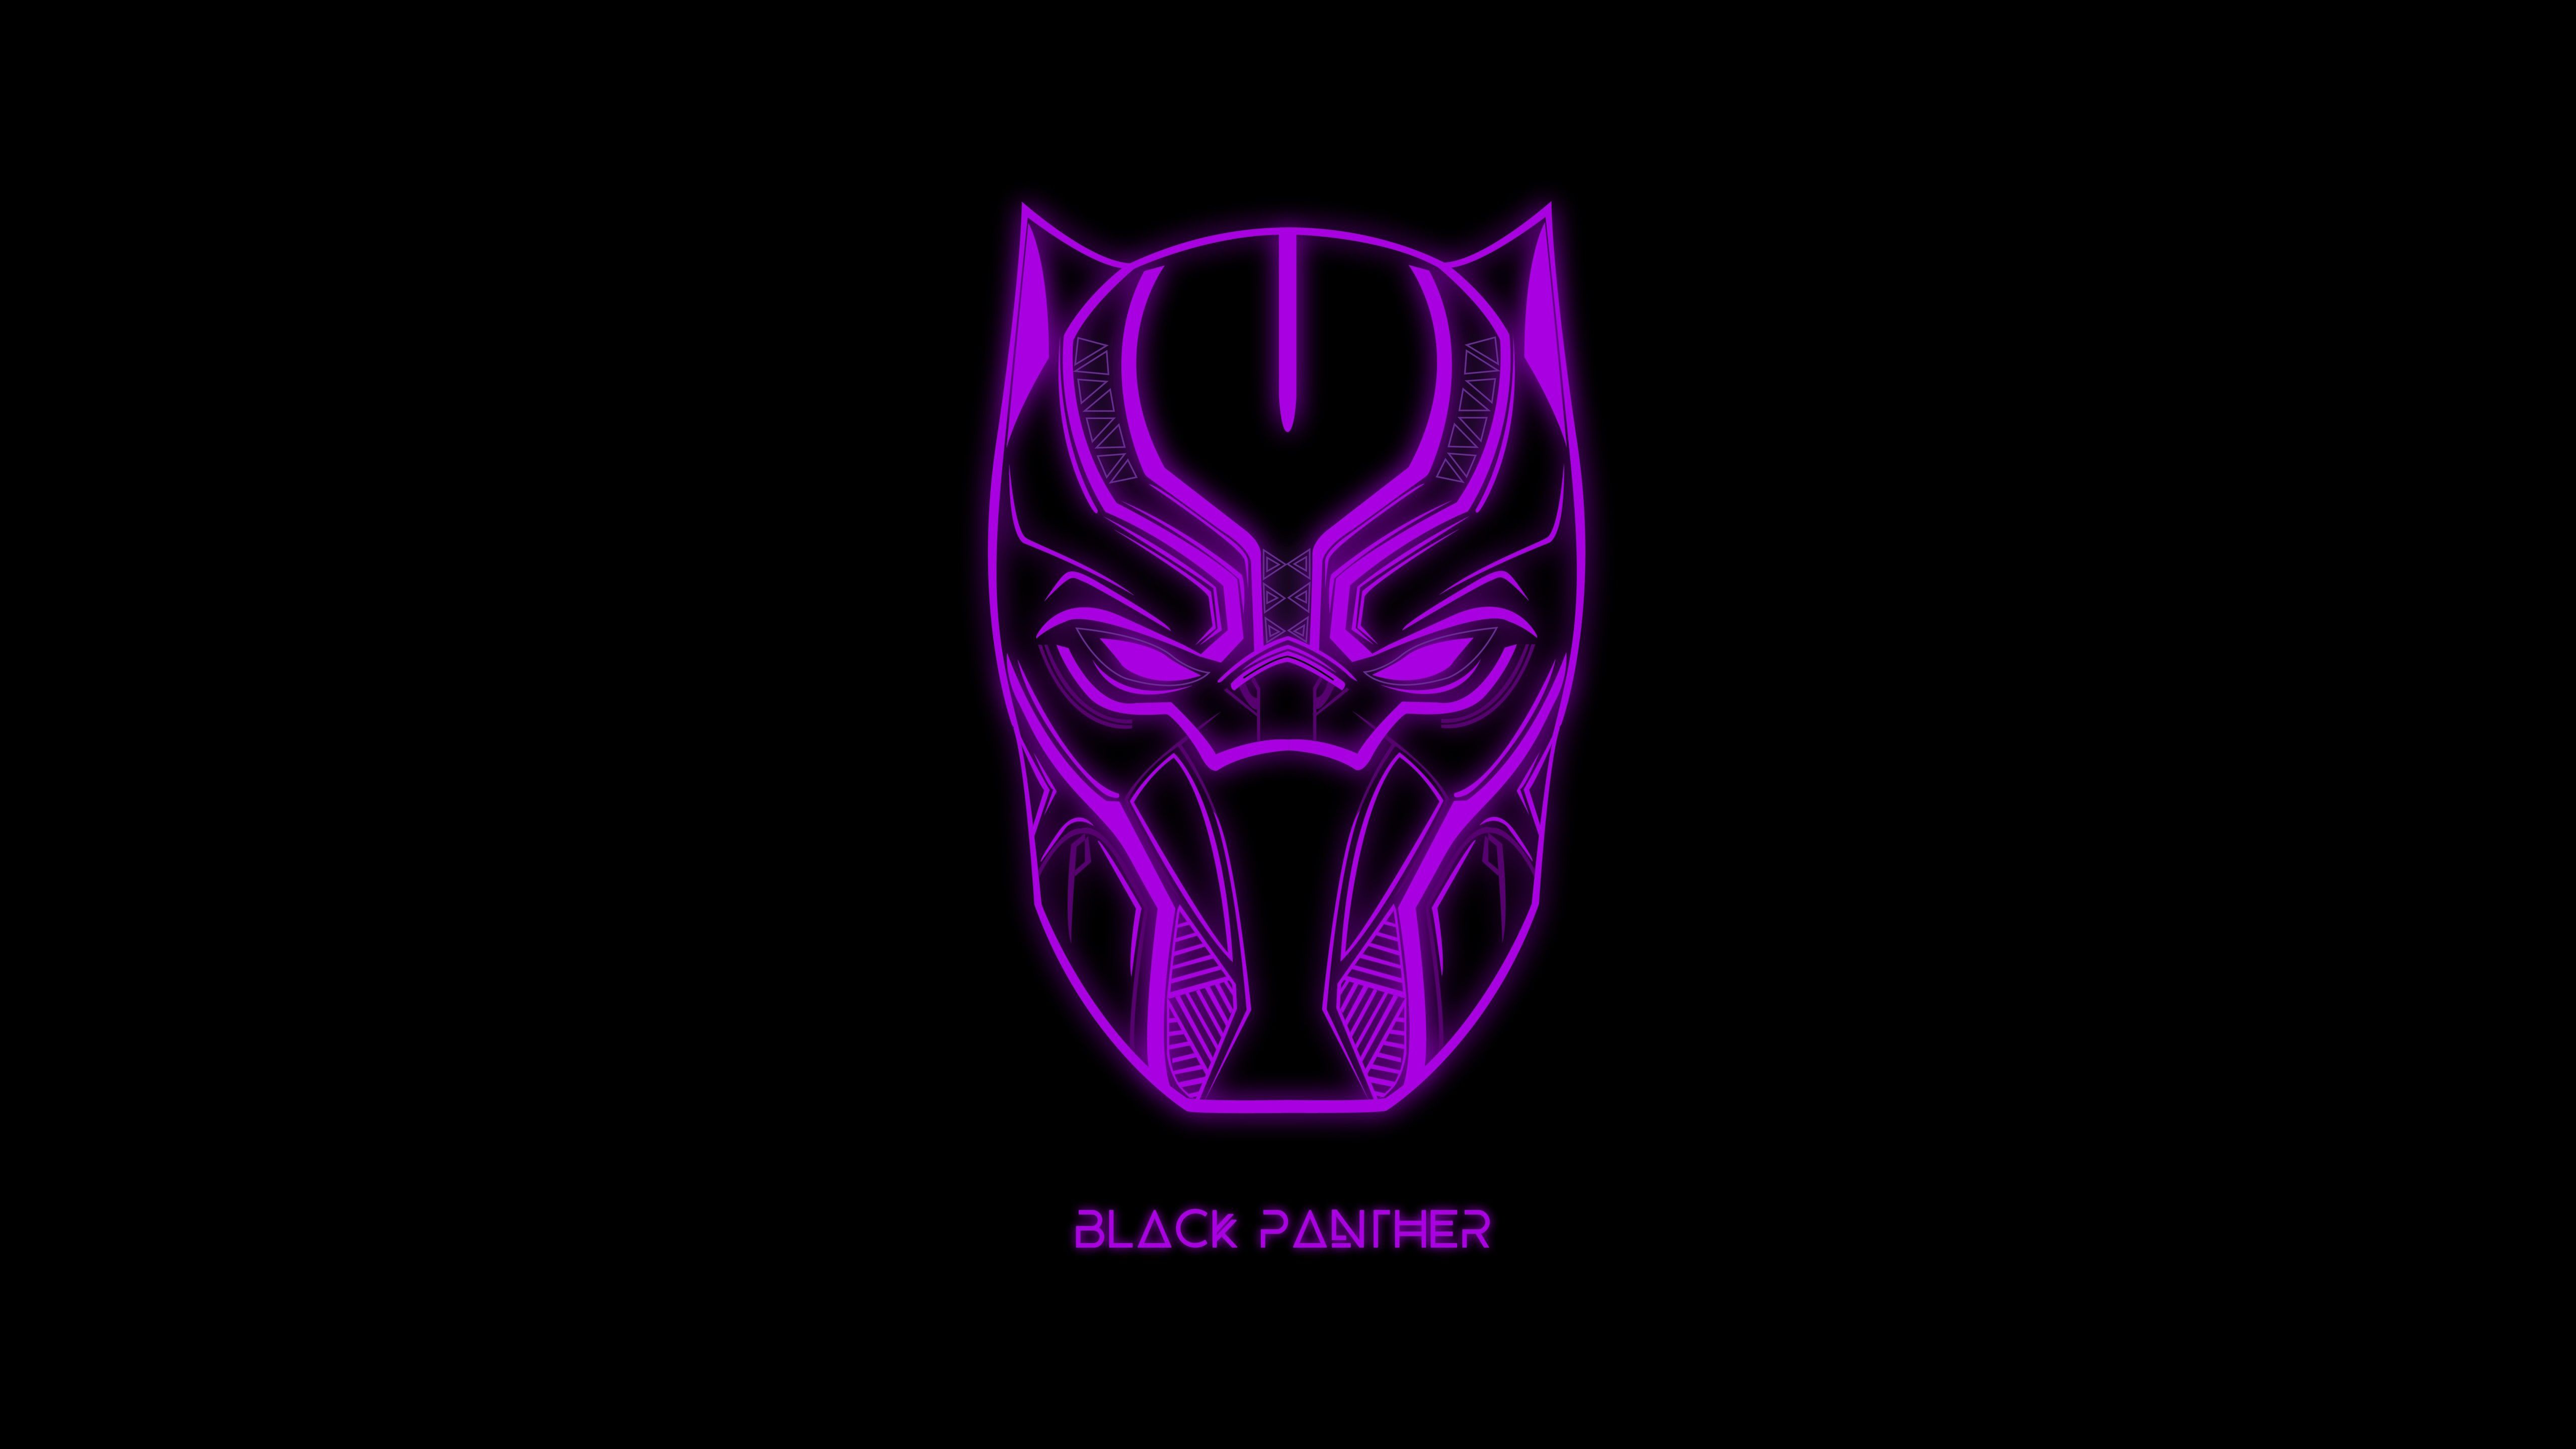 Black Panther Minimal Dark Artwork 5K Wallpaper